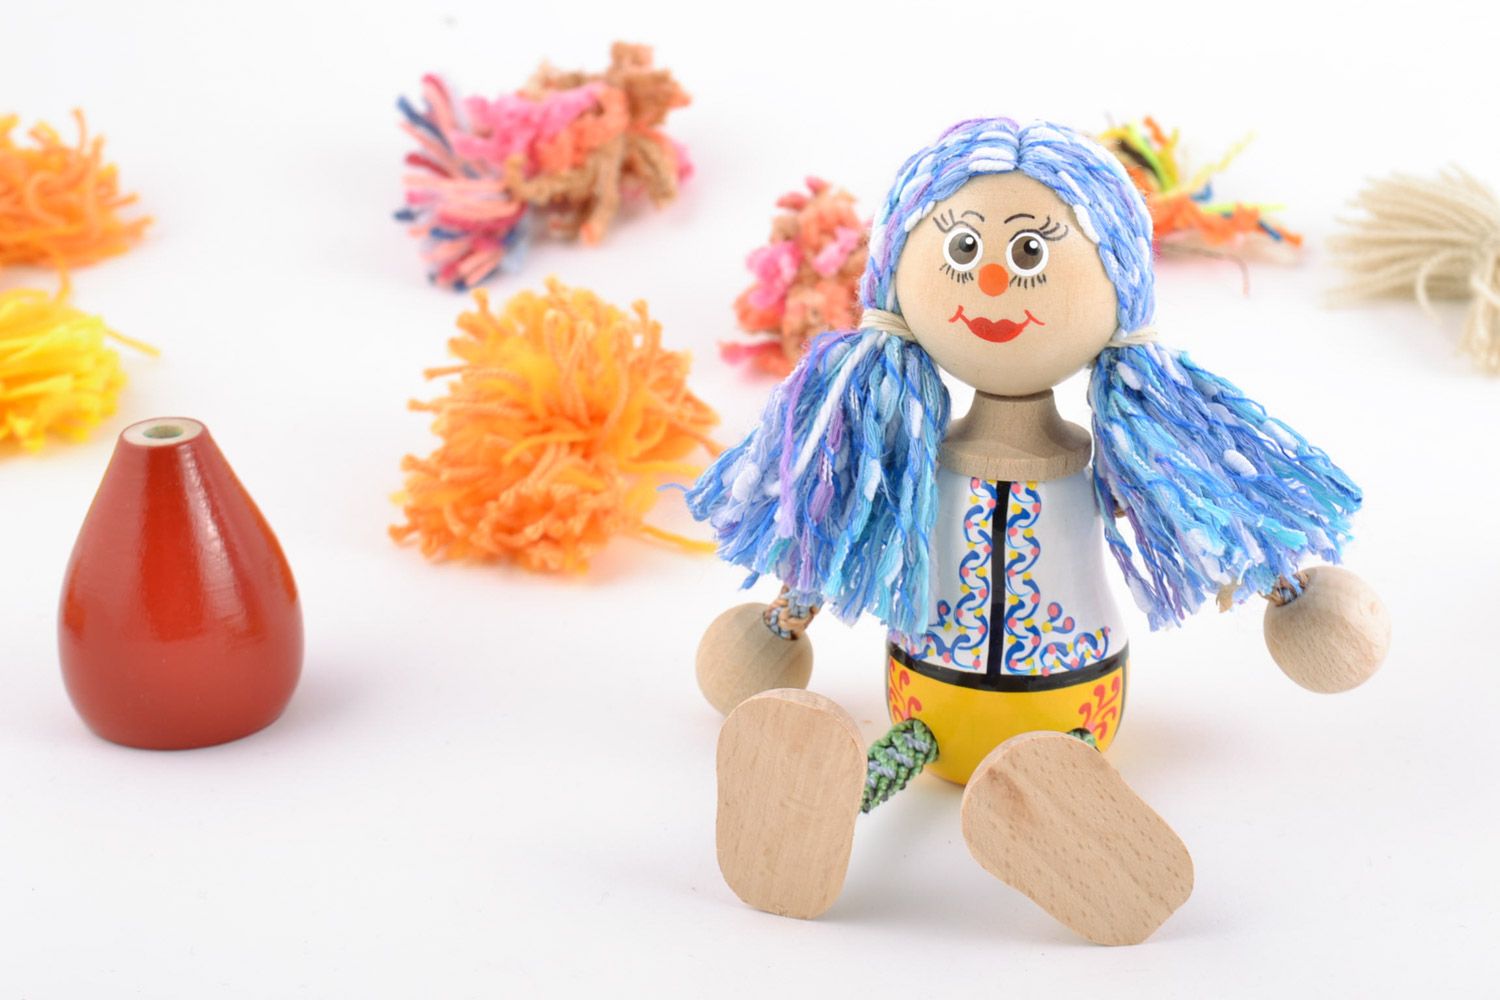 Öko Spielzeug aus Holz handmade umweltfreundlich künstlerisch Mädchen mit blauem Haar foto 1